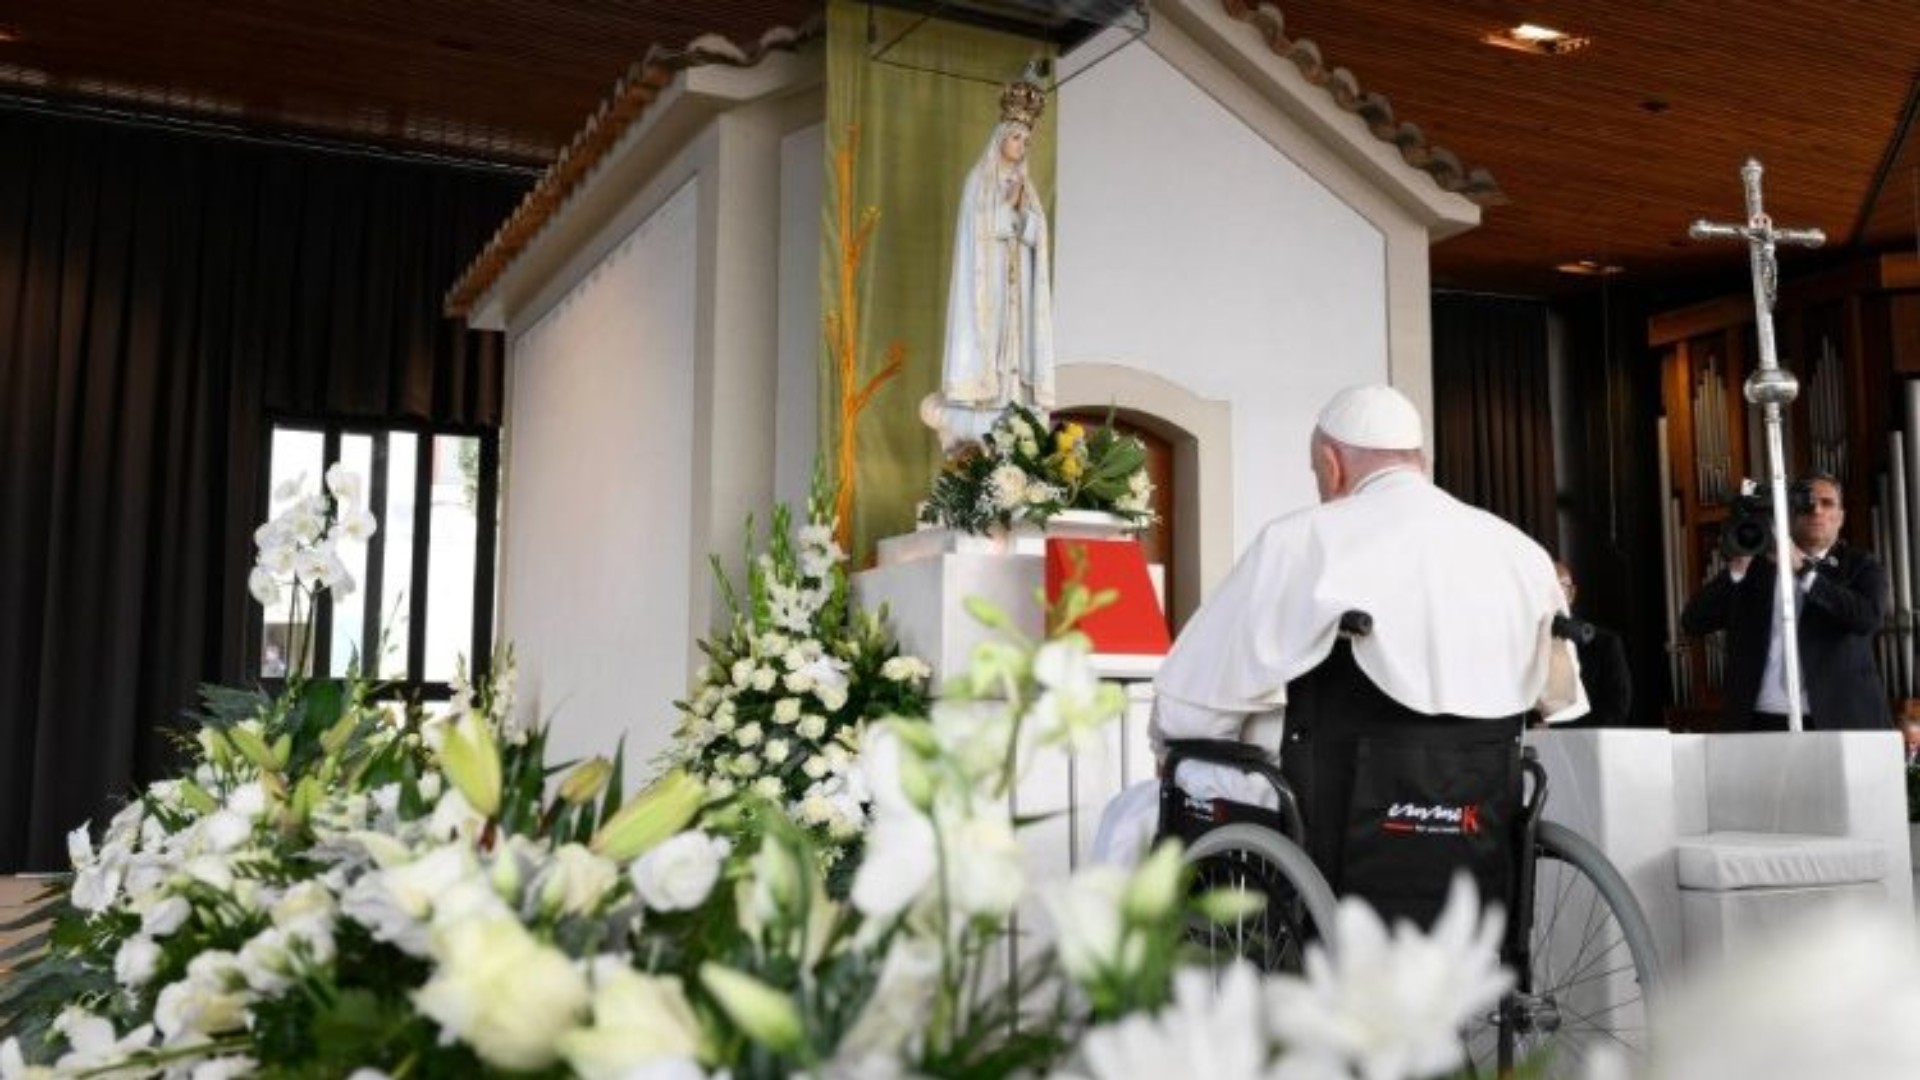 Le pape François a prié en silence pour la paix à Fatima | © Vatican Media